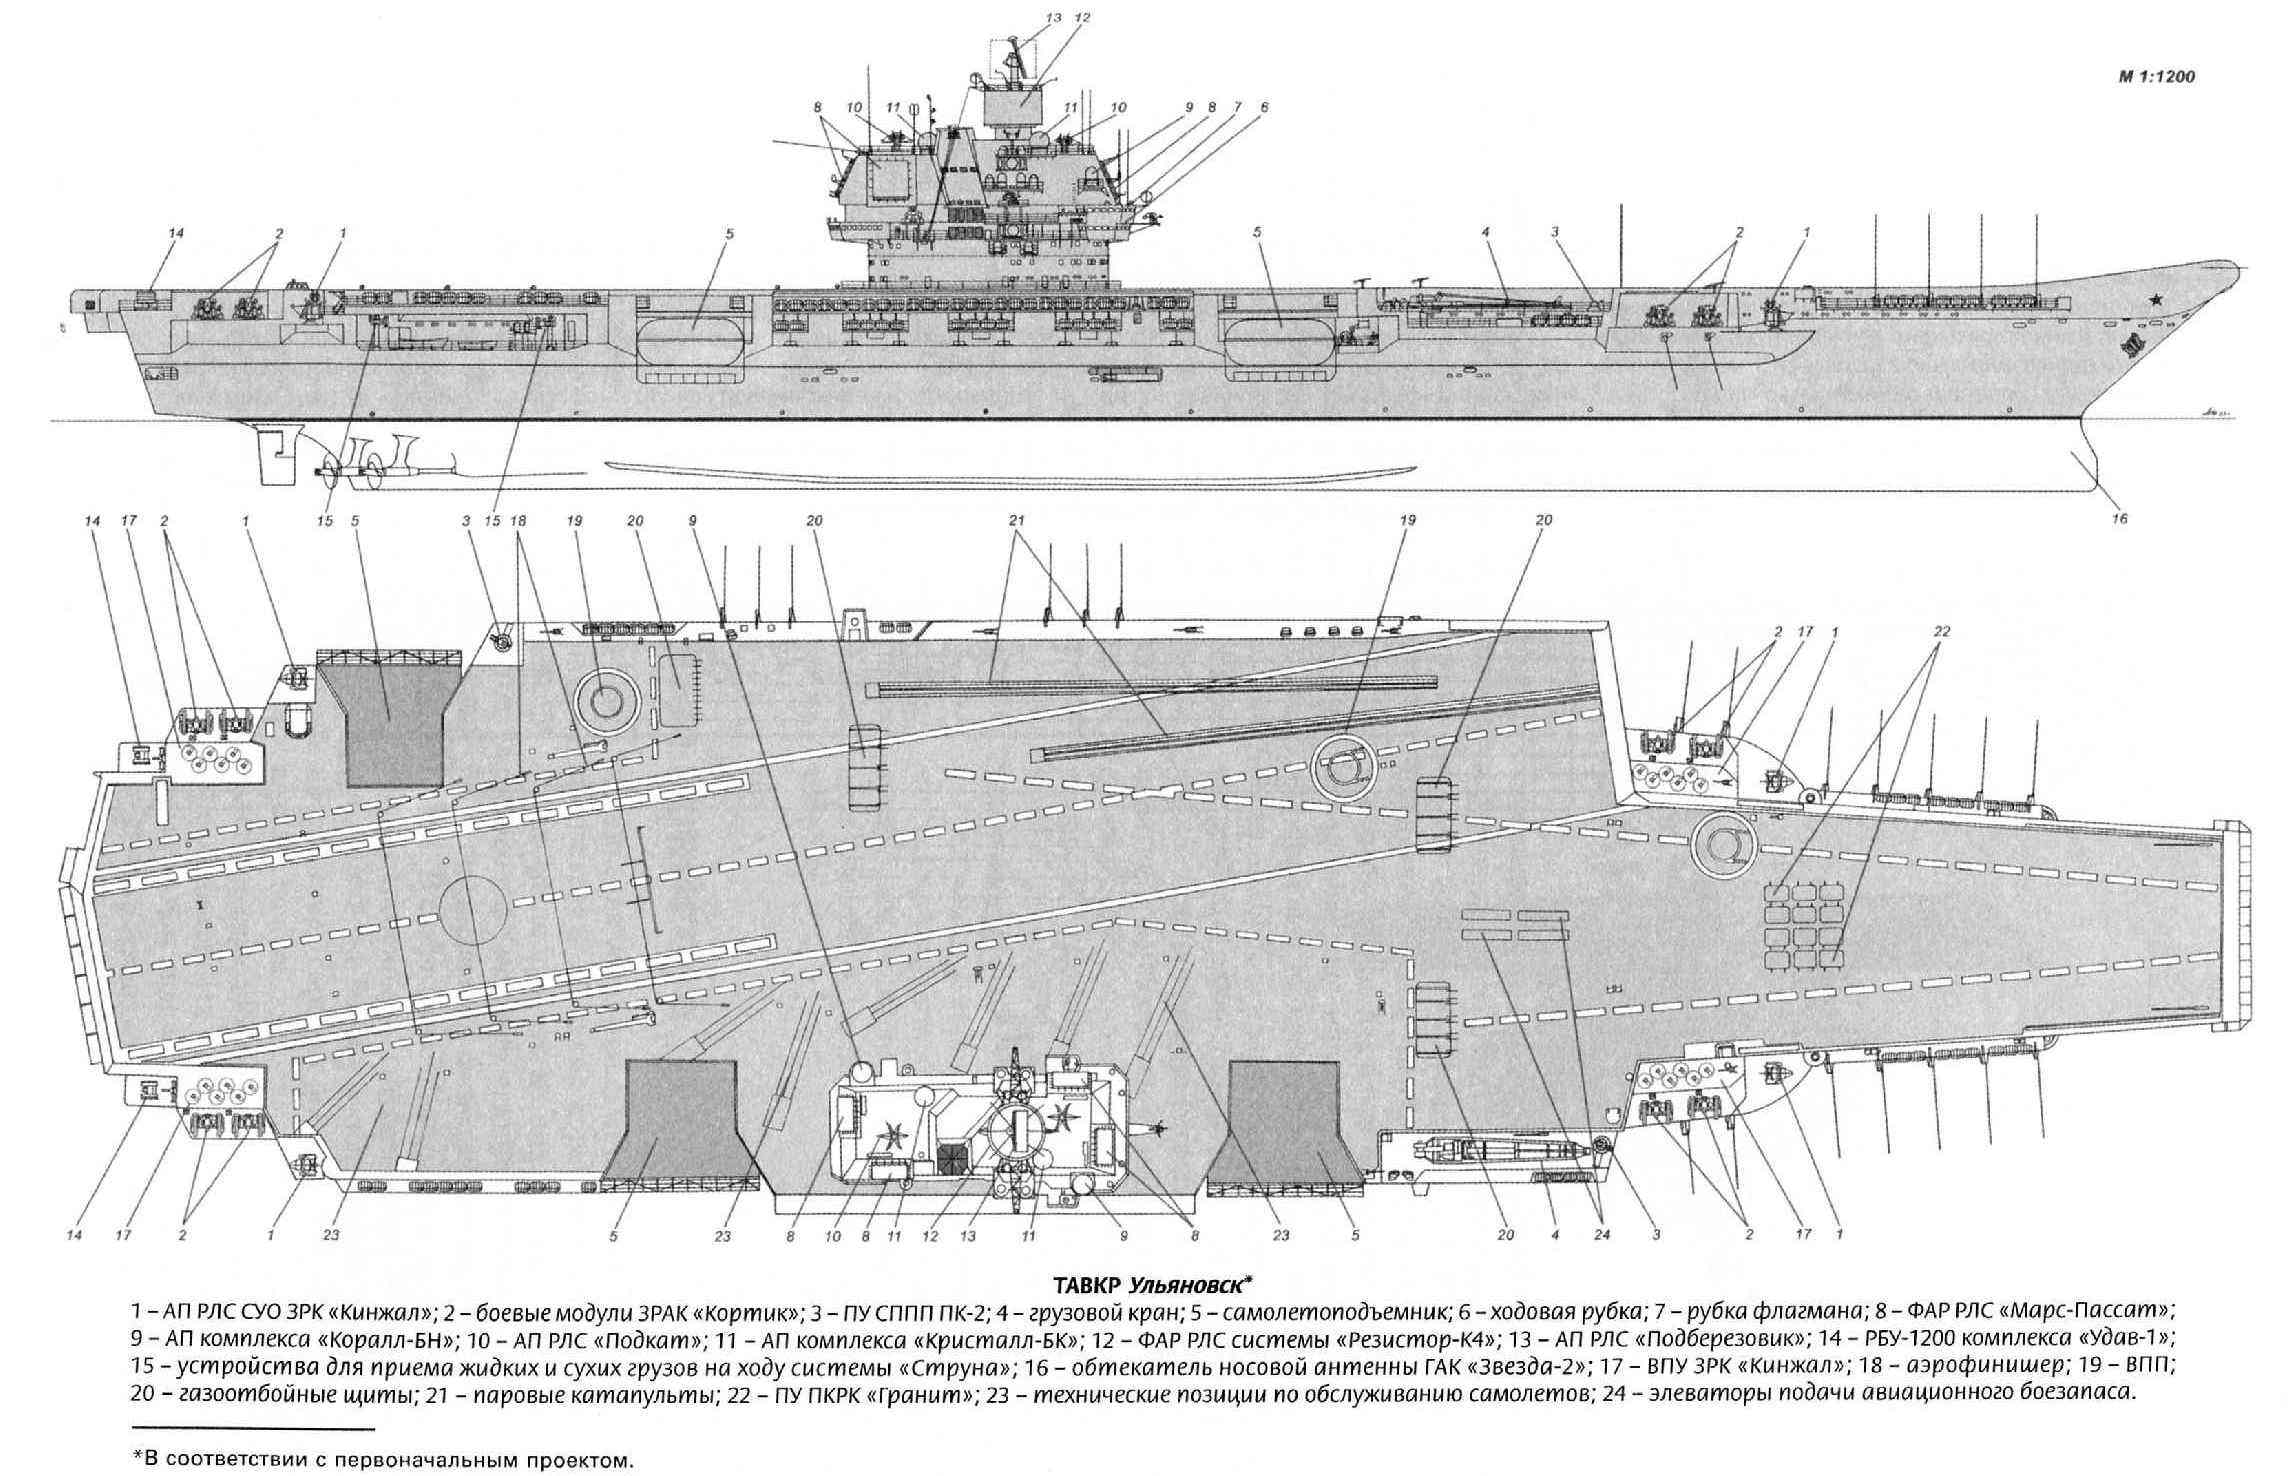 1143.7型航空母艦(烏里揚諾夫斯克號)